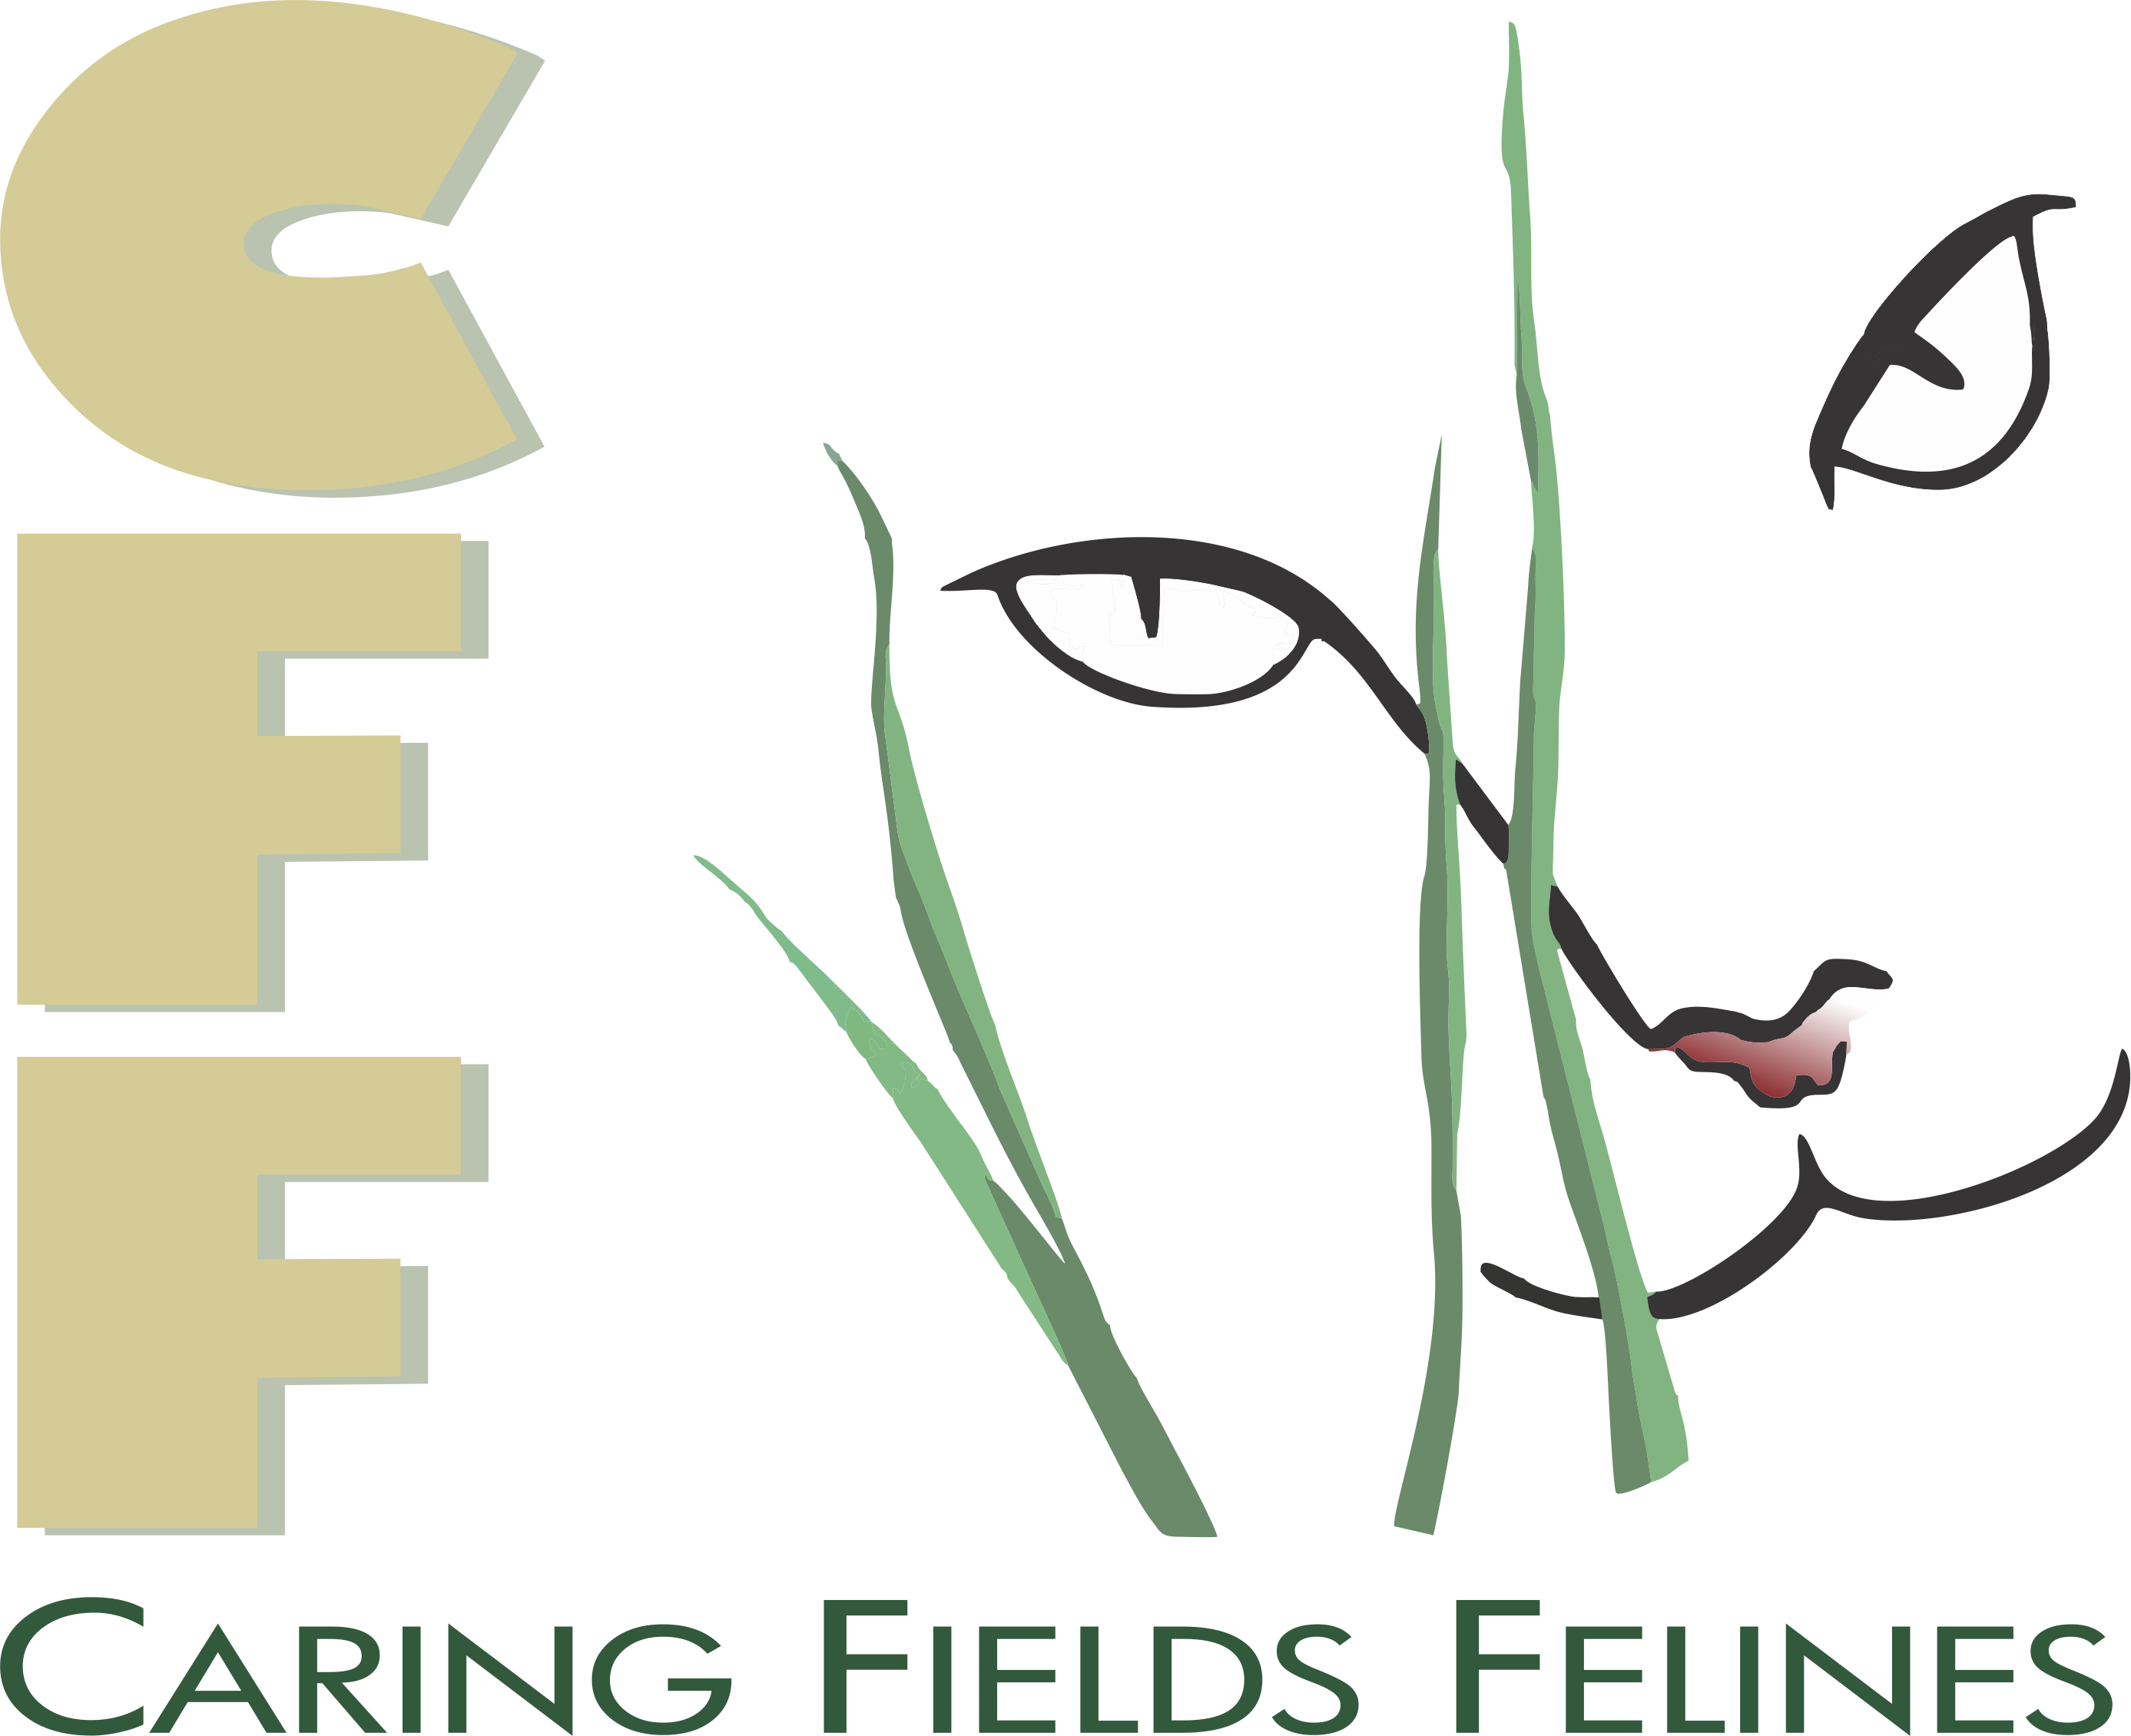 Caring Fields Felines